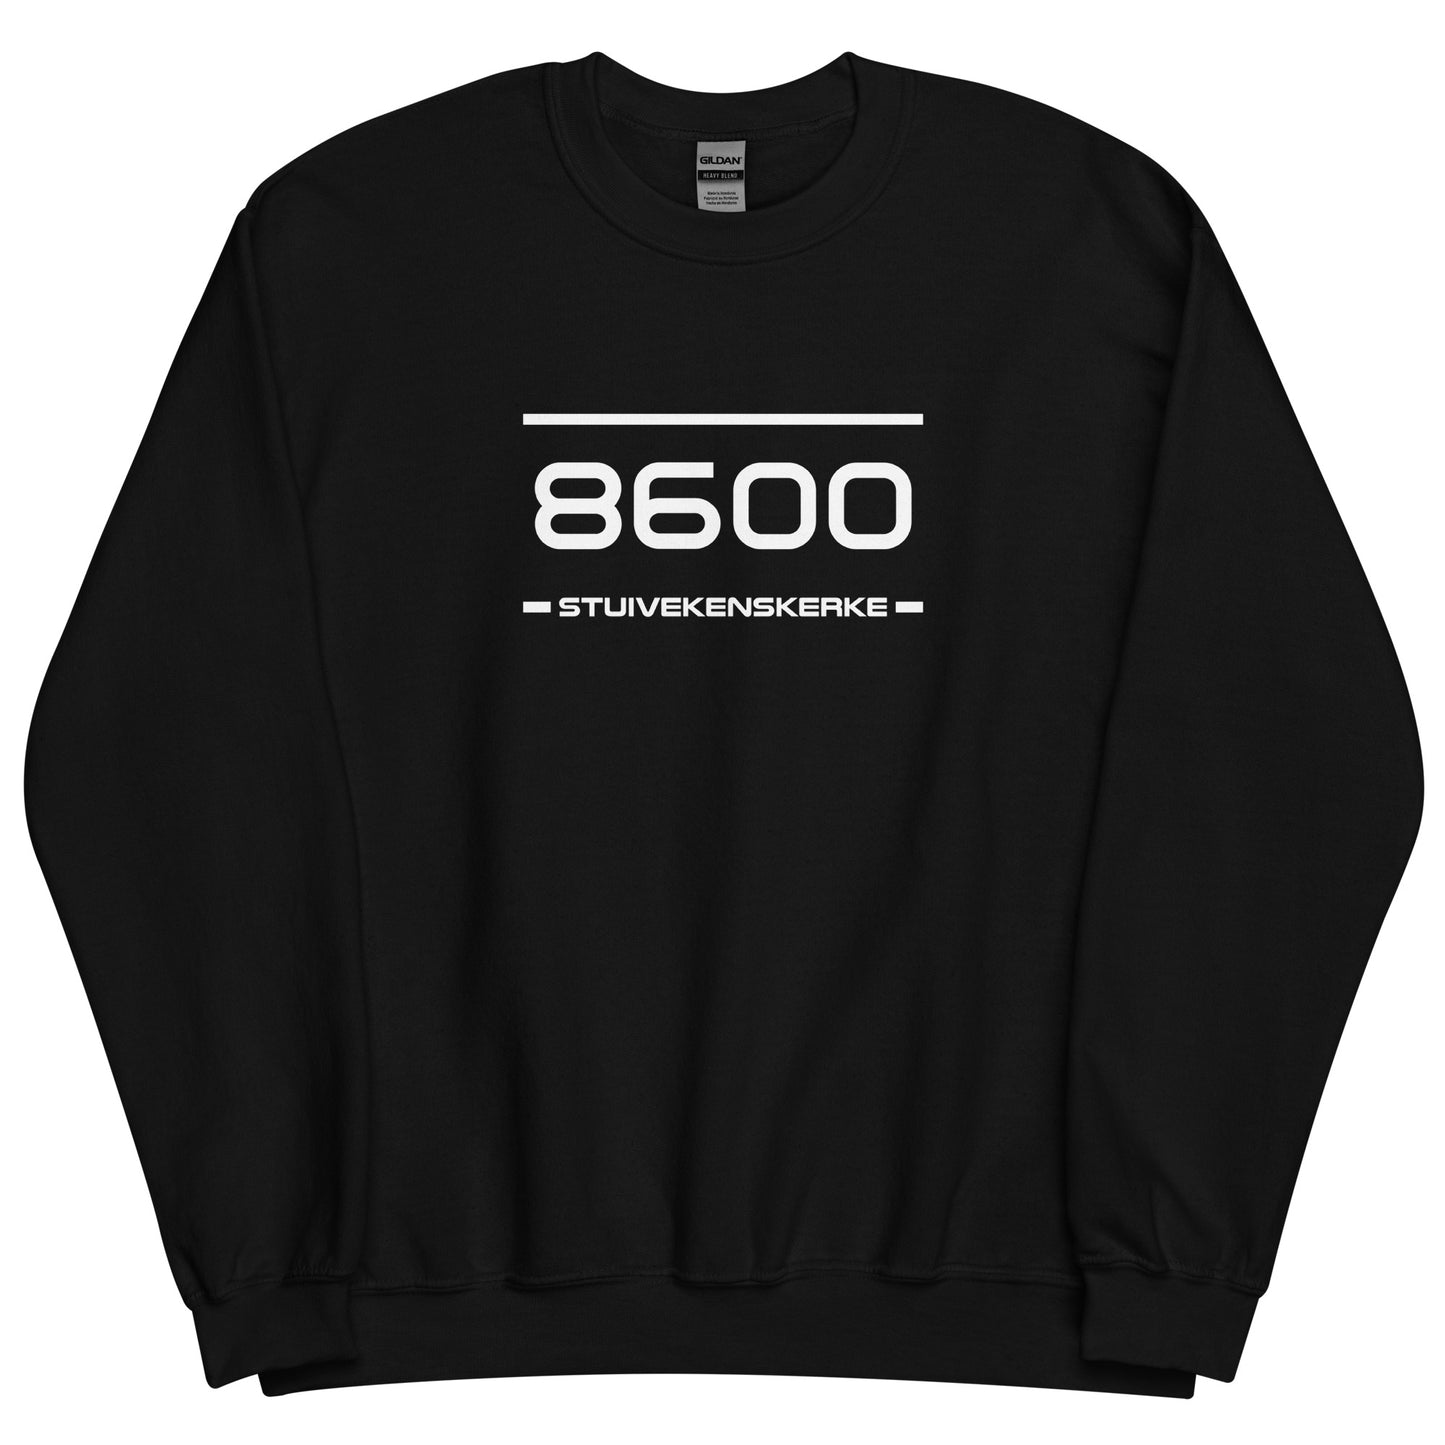 Sweater - 8600 - Stuivekenskerke (M/V)